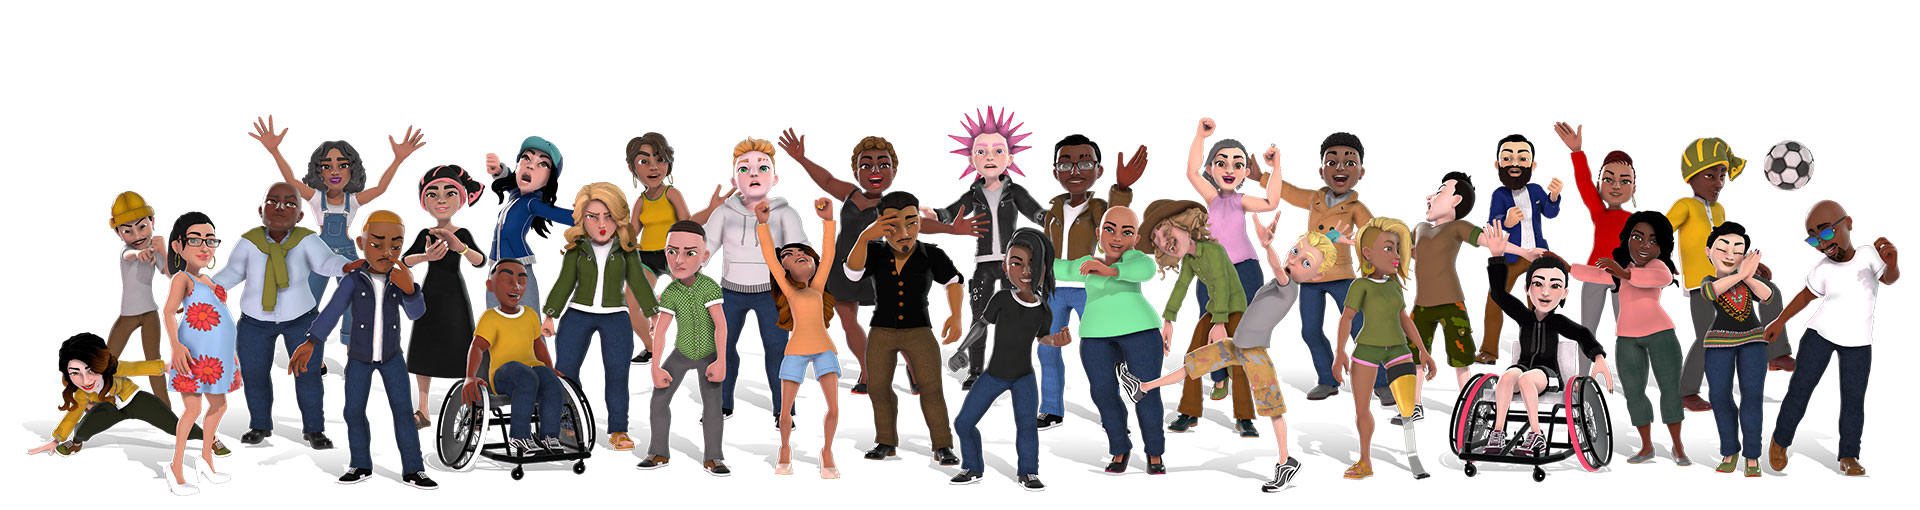 Des avatars Xbox montrant un groupe hétérogène de personnes avec différentes tenues.